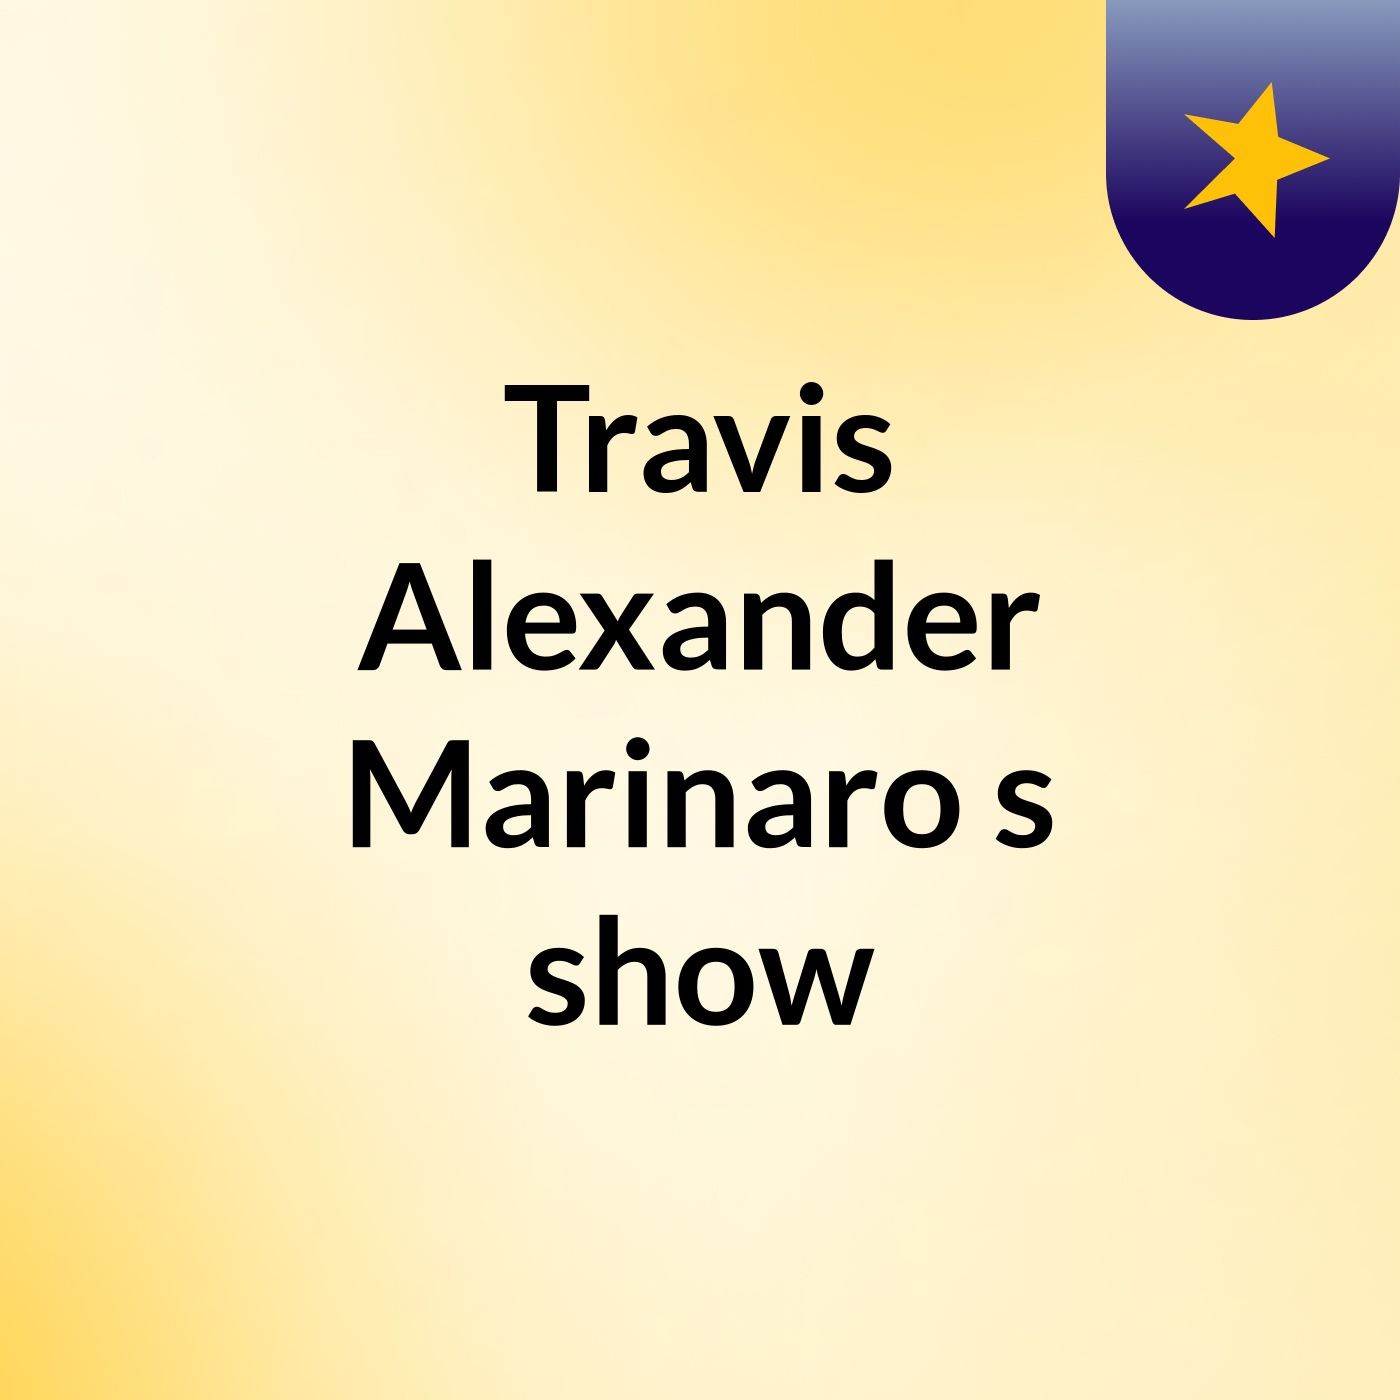 Travis Alexander Marinaro's show